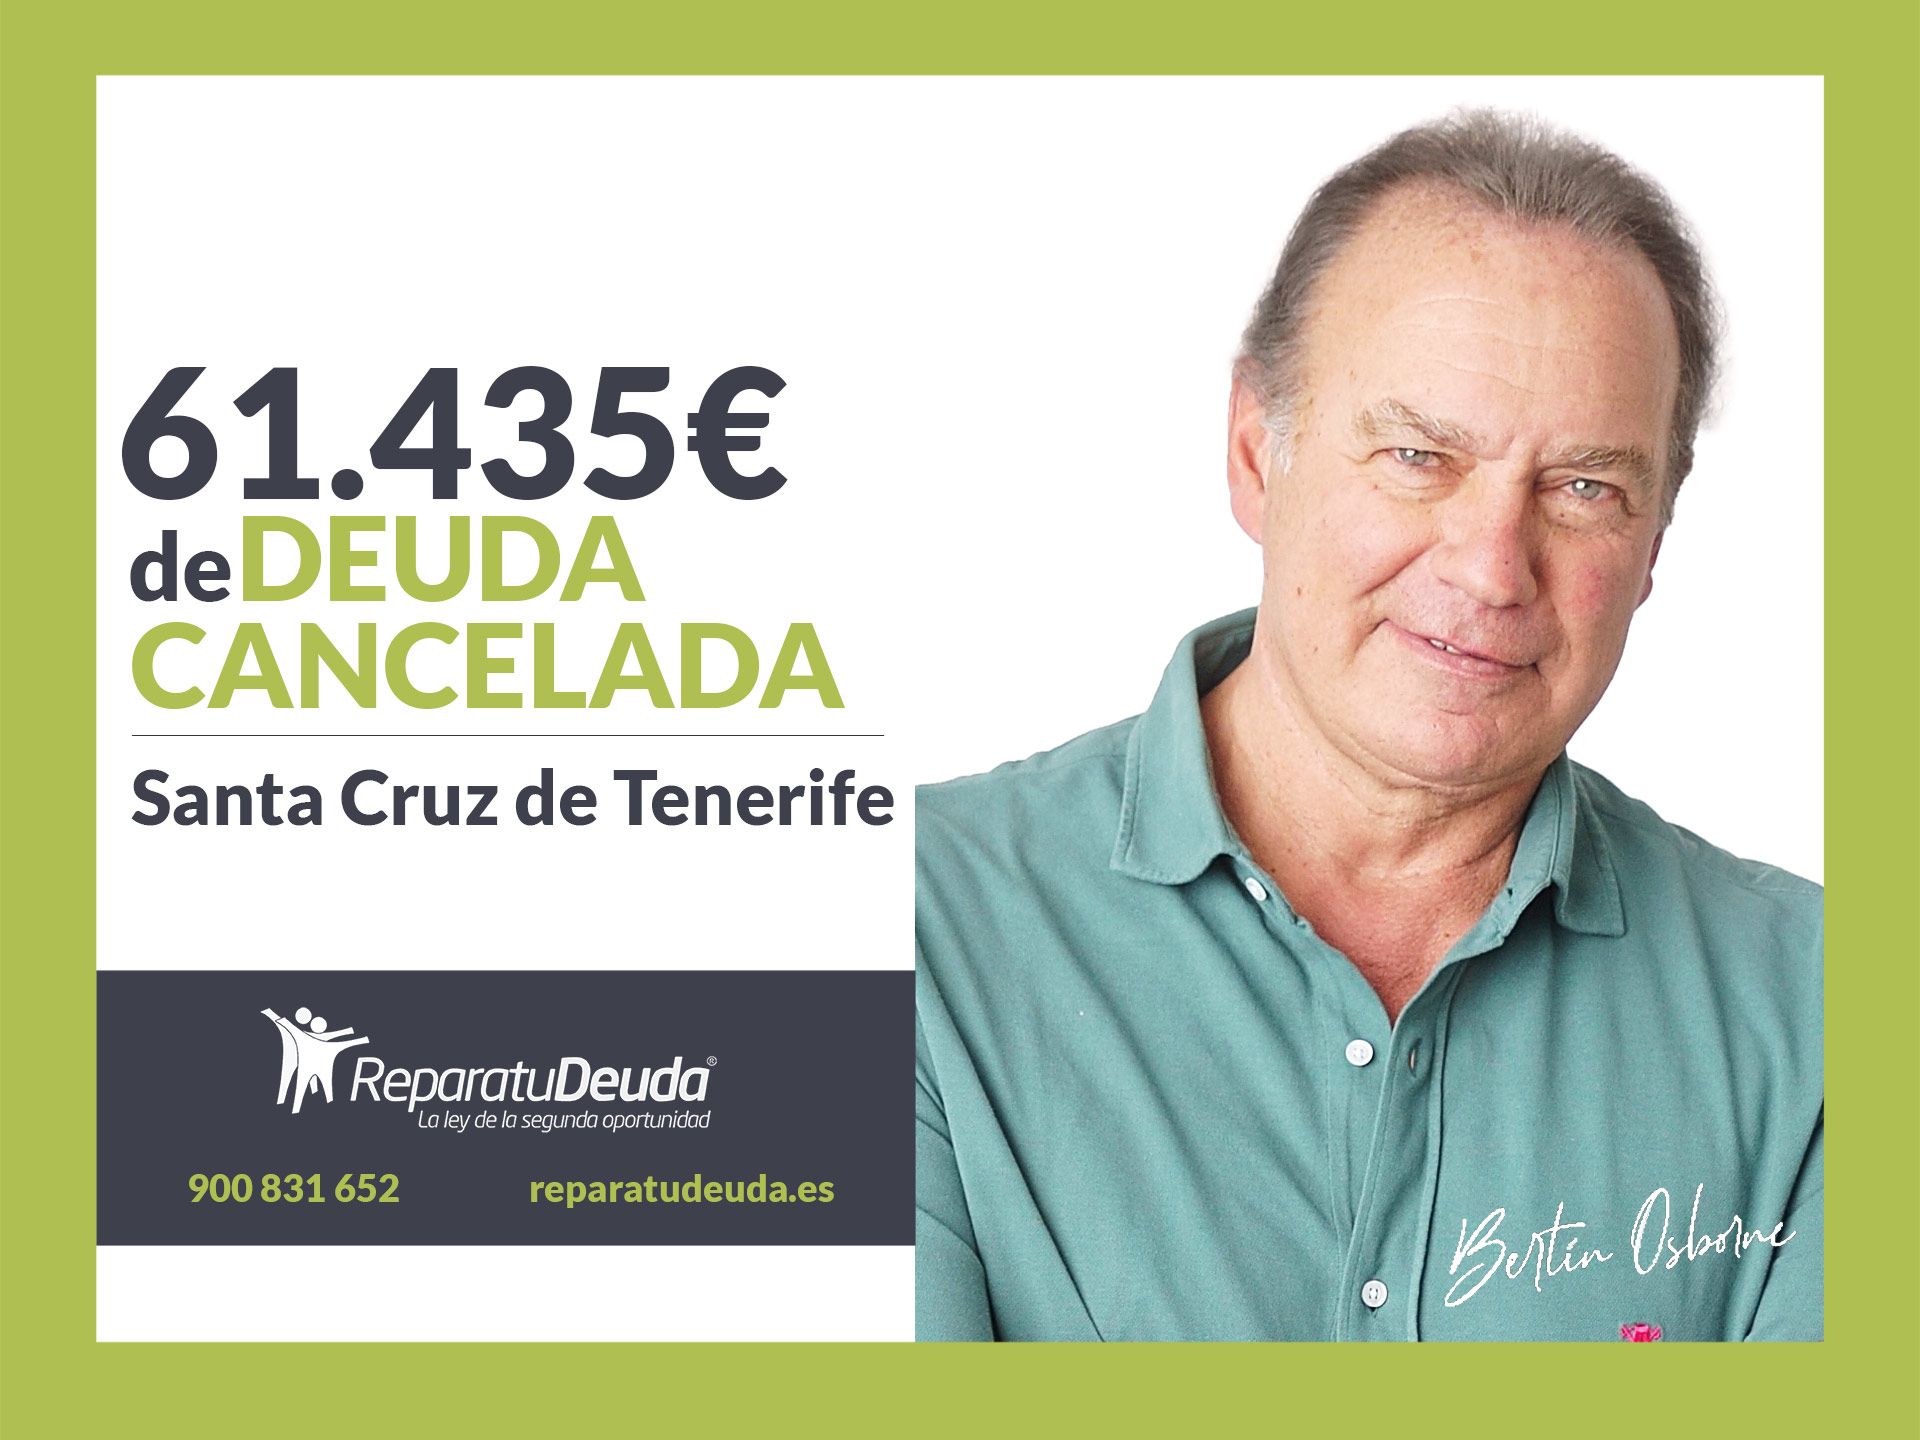 Repara tu Deuda cancela 61.435? en Santa Cruz de Tenerife (Canarias) con la Ley de la Segunda Oportunidad